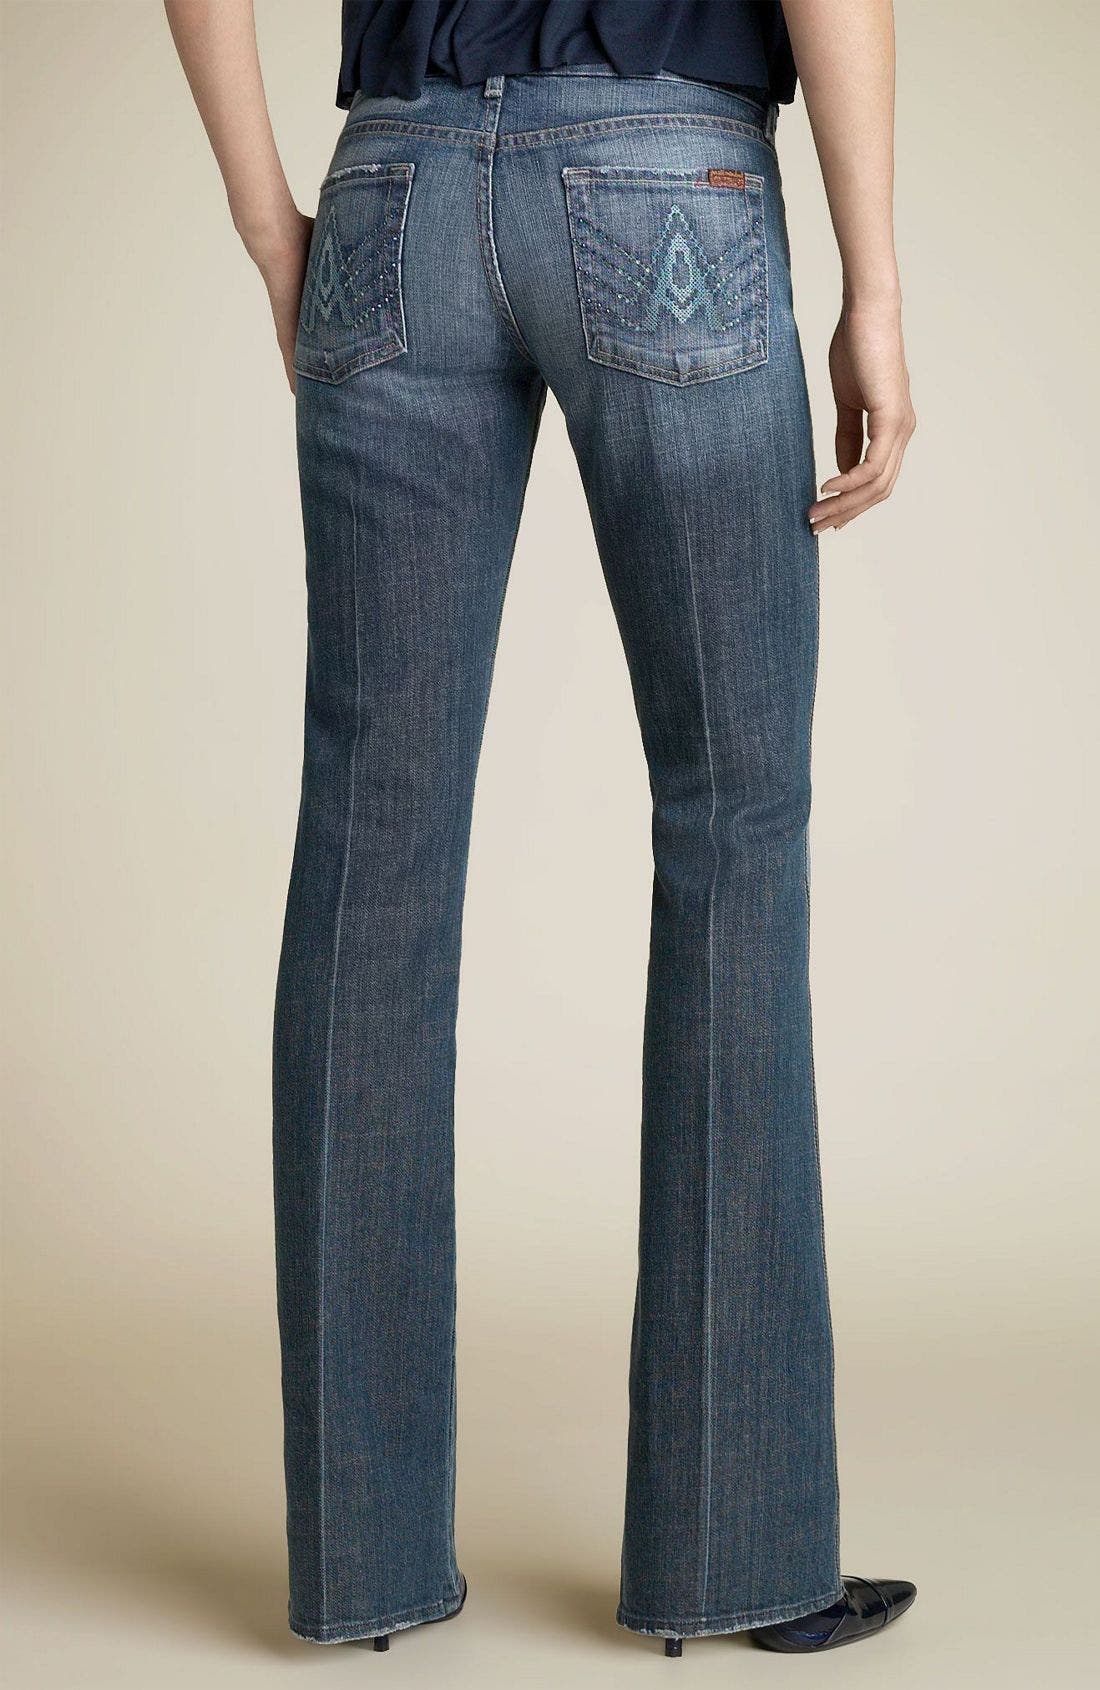 7 pocket jeans